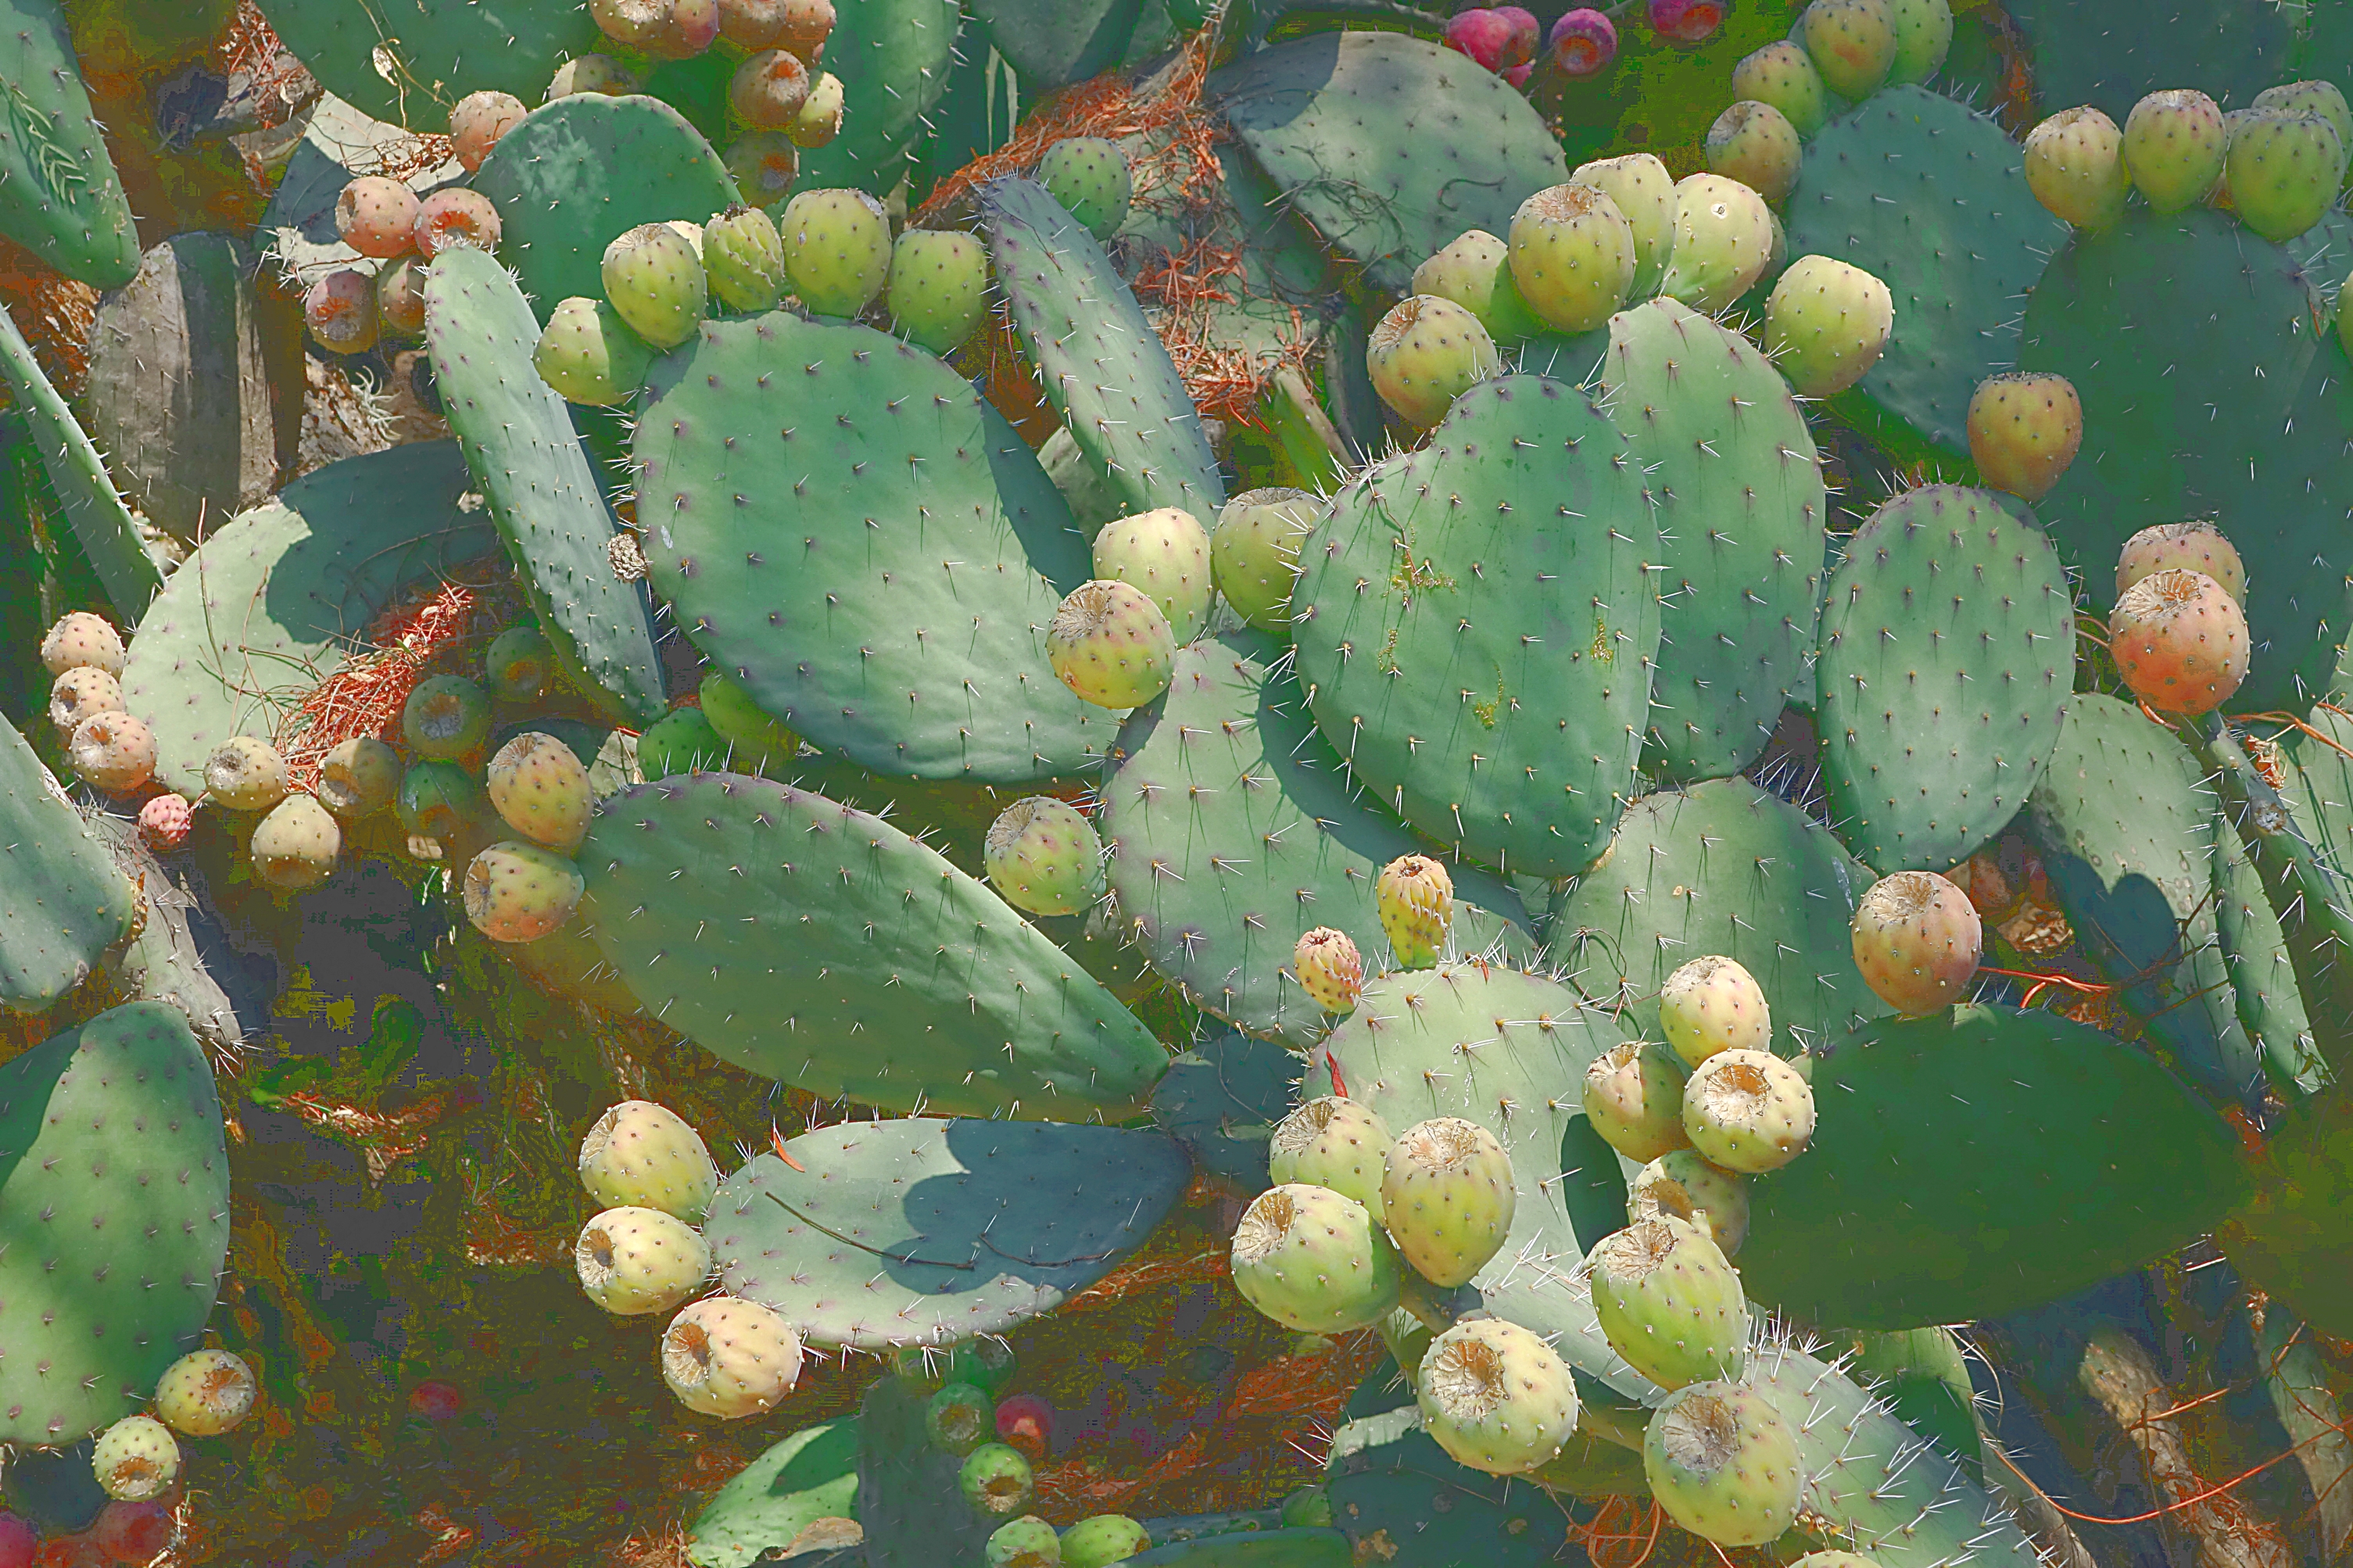 Сладкие плоды кактусов-опунций. Мехико. Фото Морошкина В.В.